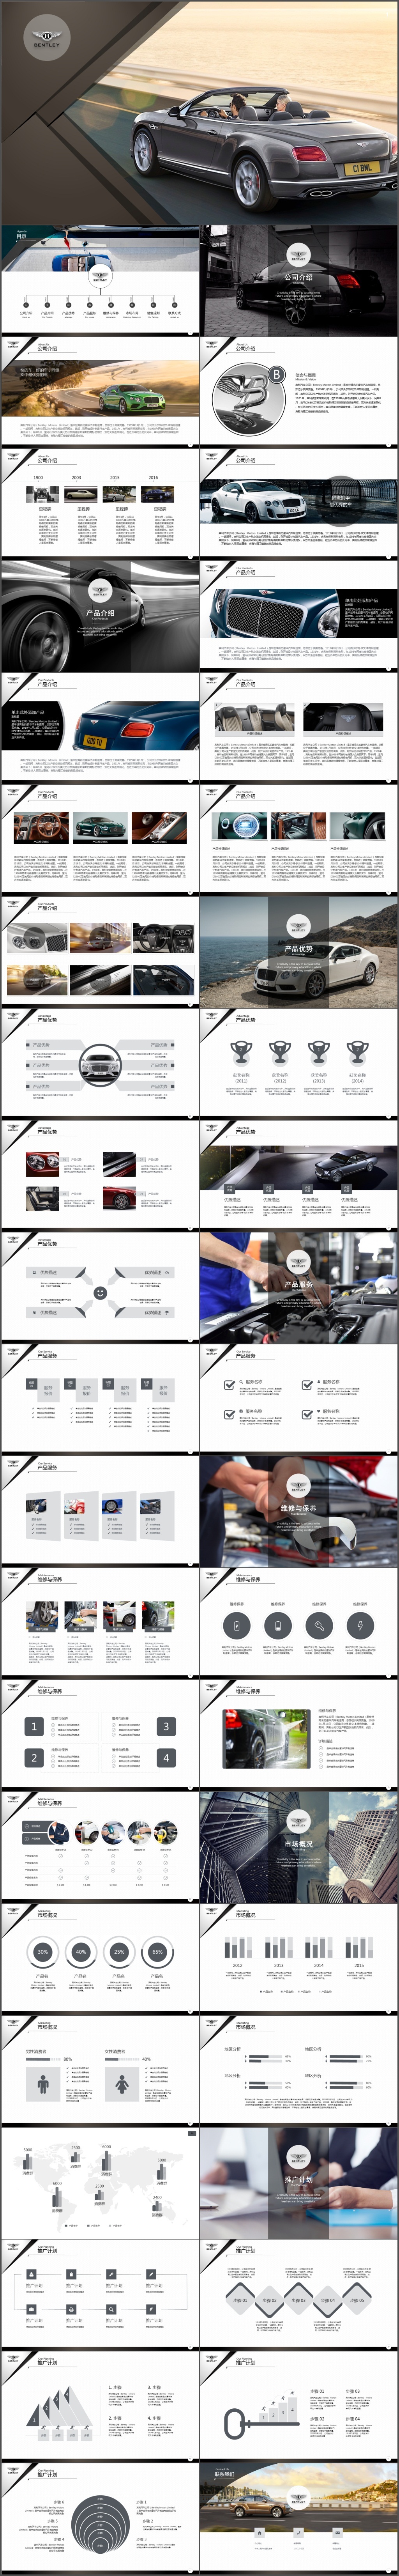 高端时尚汽车品牌宣传产品发布公司介绍PPT模板(488)